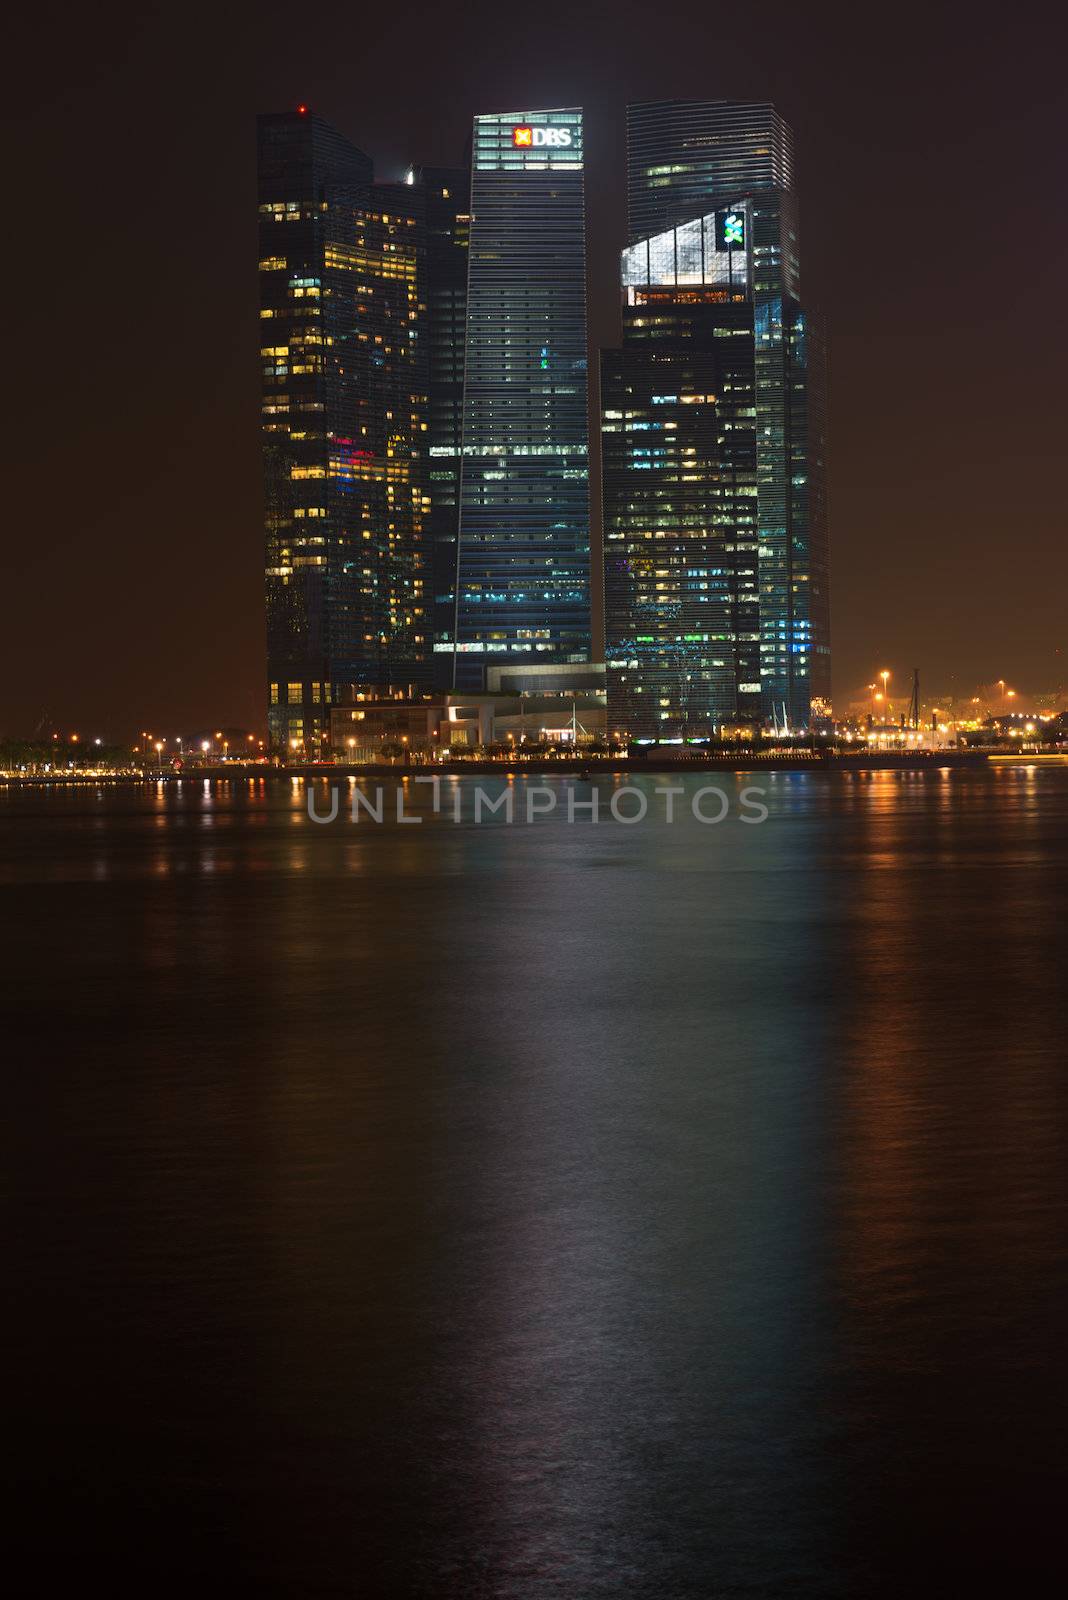 Marina Bay Financial Centre, Singapore by iryna_rasko